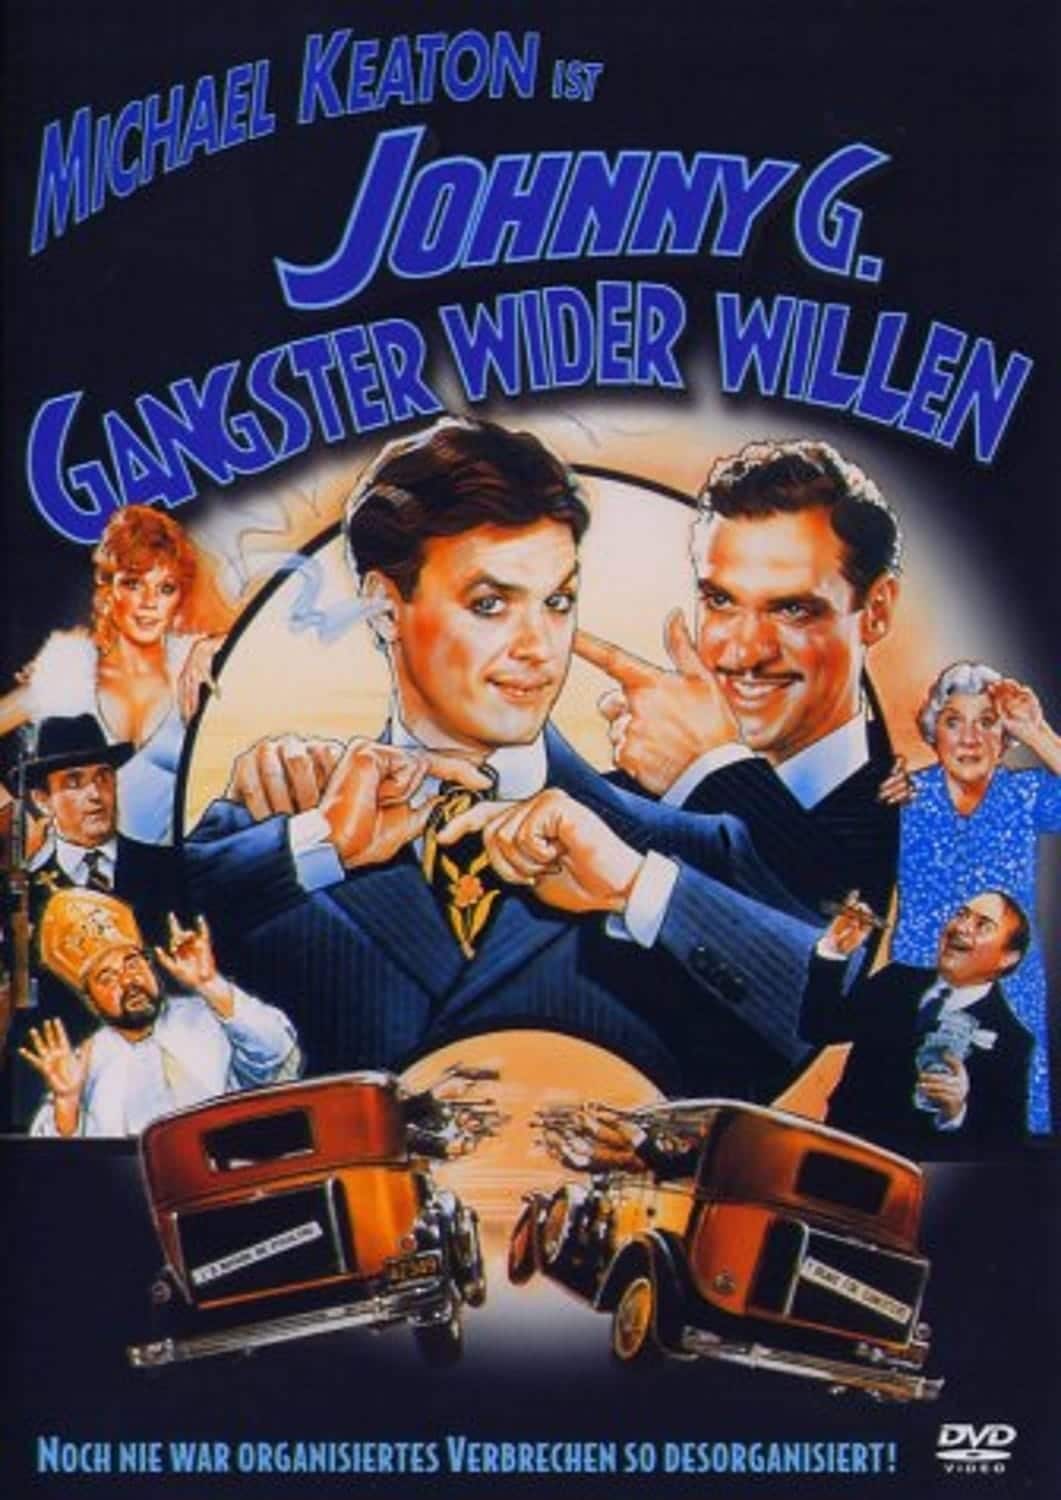 Plakat von "Johnny G. - Gangster wider Willen"